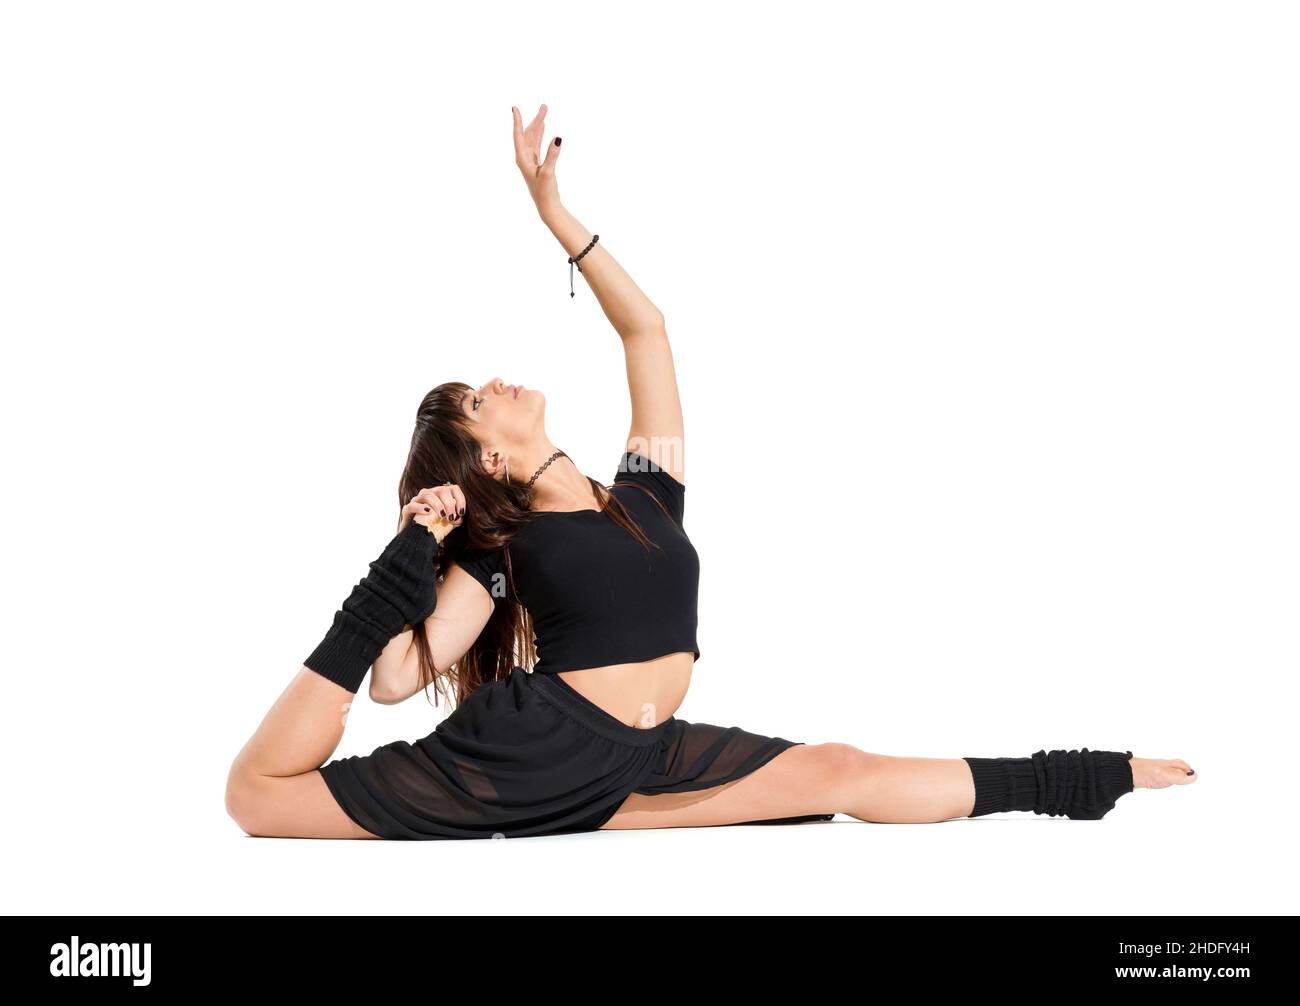 Balanceakt, Tänzer, Flexibilität, Balanceakt, Tänzer Stockfoto